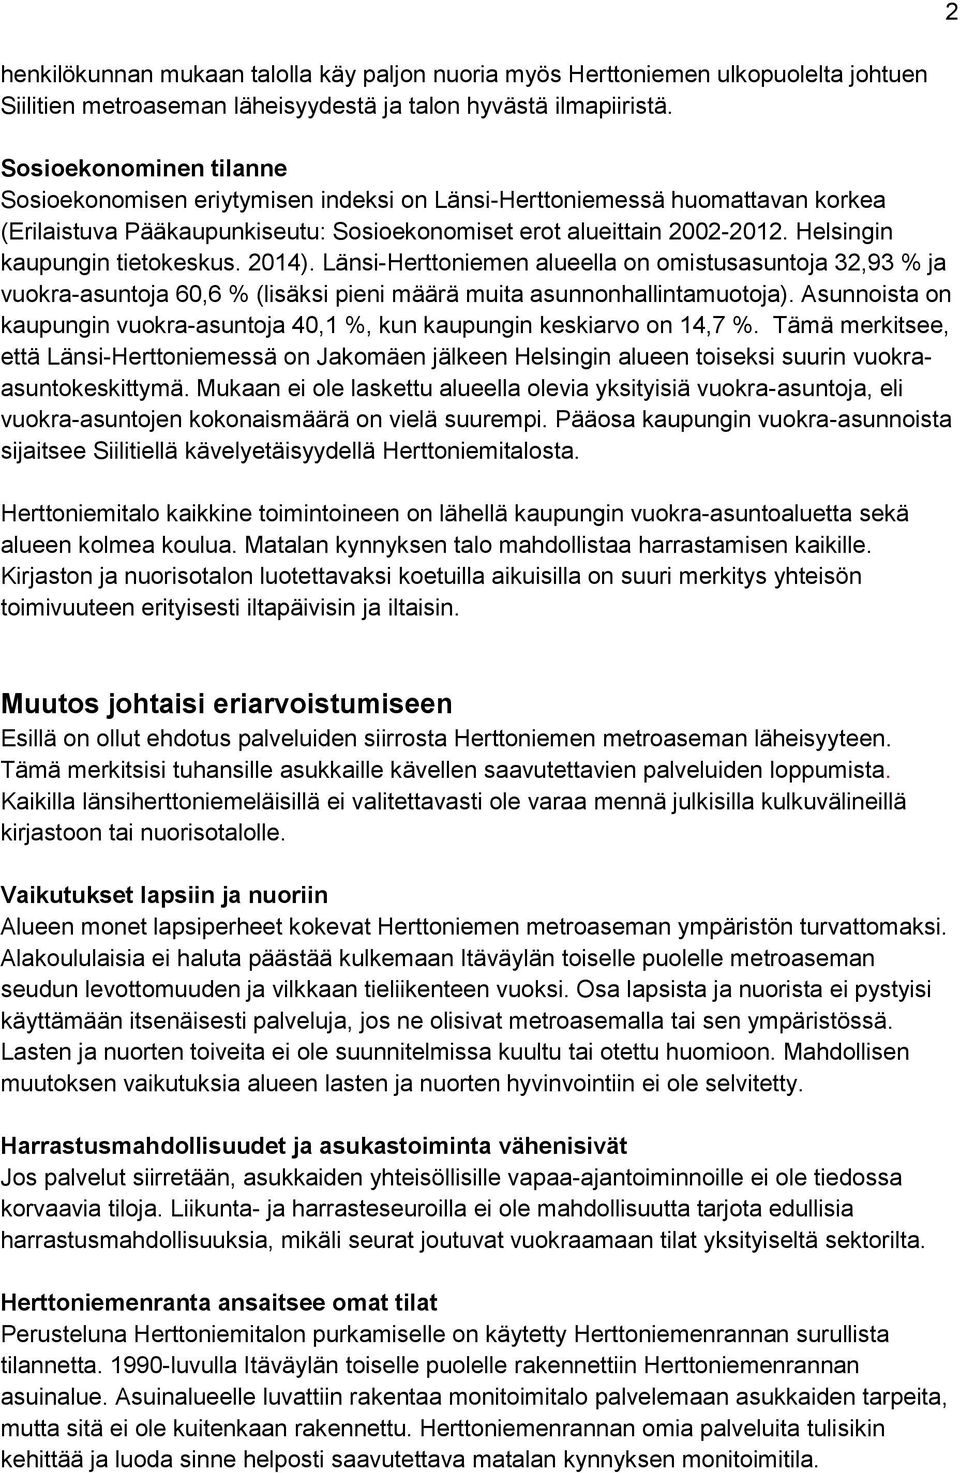 Helsingin kaupungin tietokeskus. 2014). Länsi-Herttoniemen alueella on omistusasuntoja 32,93 % ja vuokra-asuntoja 60,6 % (lisäksi pieni määrä muita asunnonhallintamuotoja).